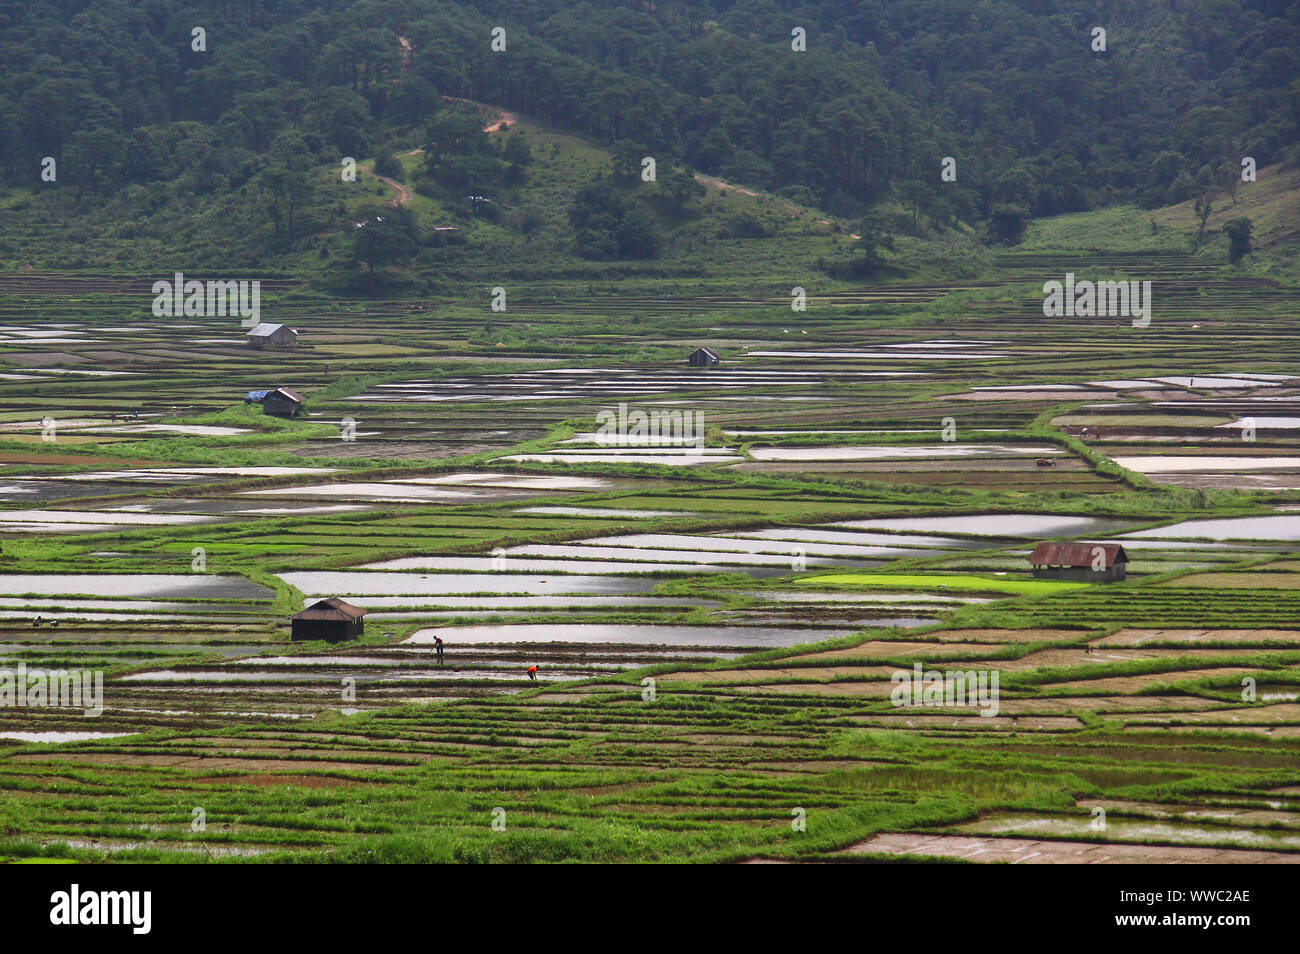 Patchwork paddy fields near Jowai, Meghalaya Stock Photo